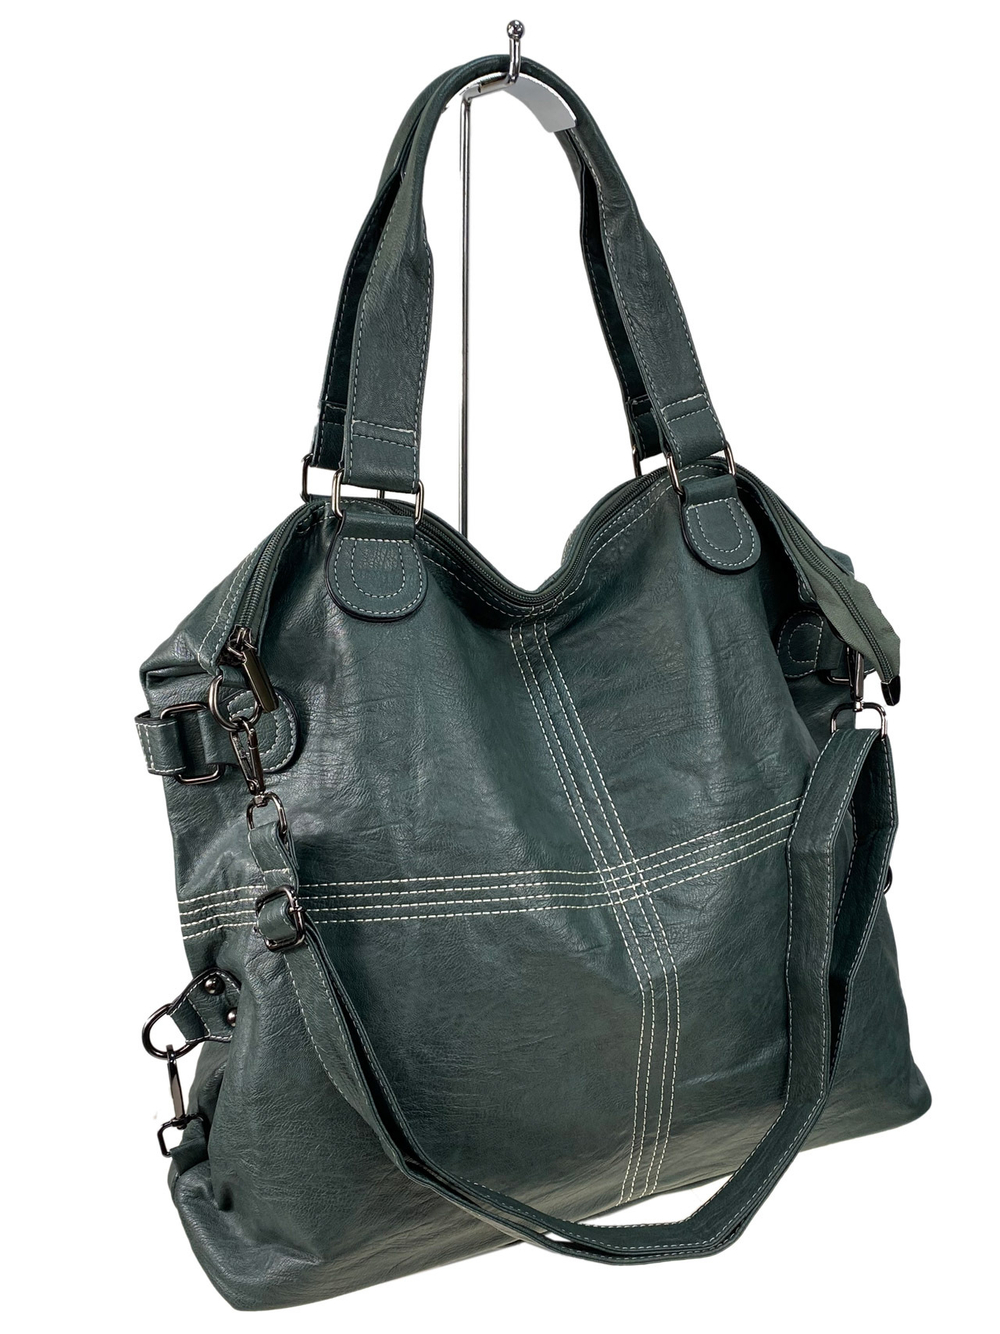 Женская сумка тоут из искусственной кожи, цвет серо-зеленый